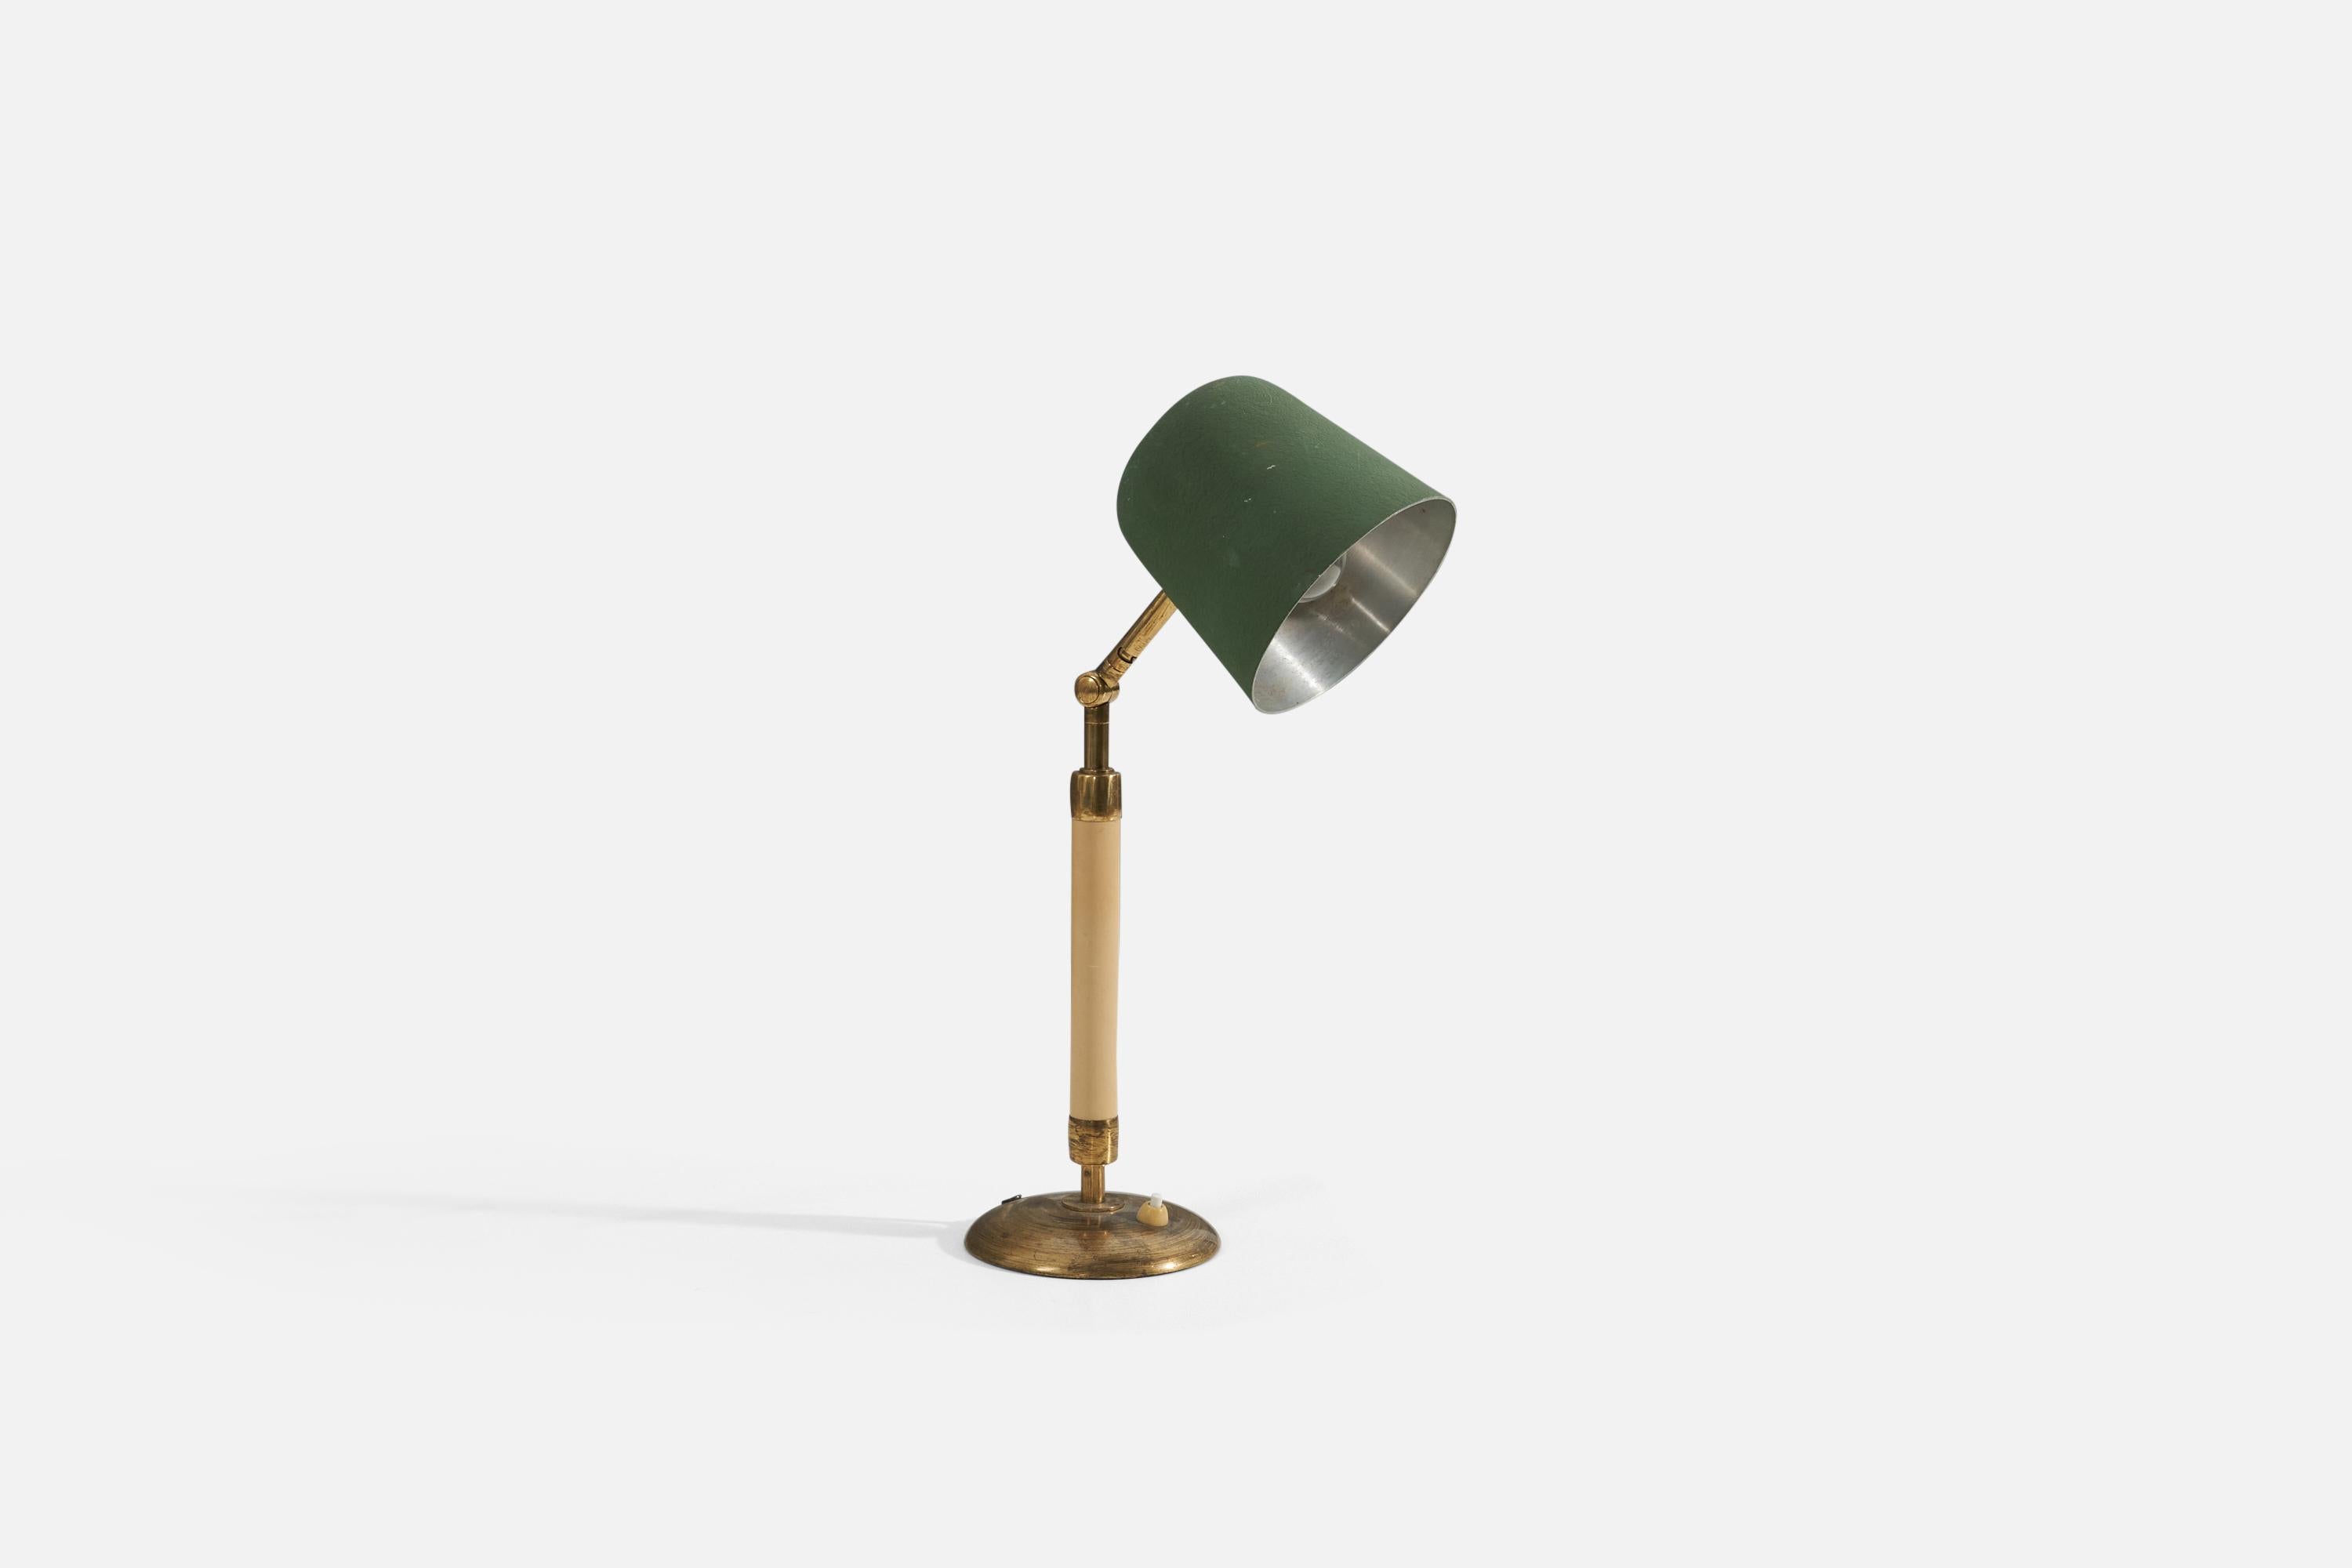 Une lampe de table attribuée à Bertil Brisborg pour Nordiska Kompaniet. Produit en Suède, années 1940. La lampe comprend une base en laiton, une tige en bakélite et un abat-jour en métal laqué vert.